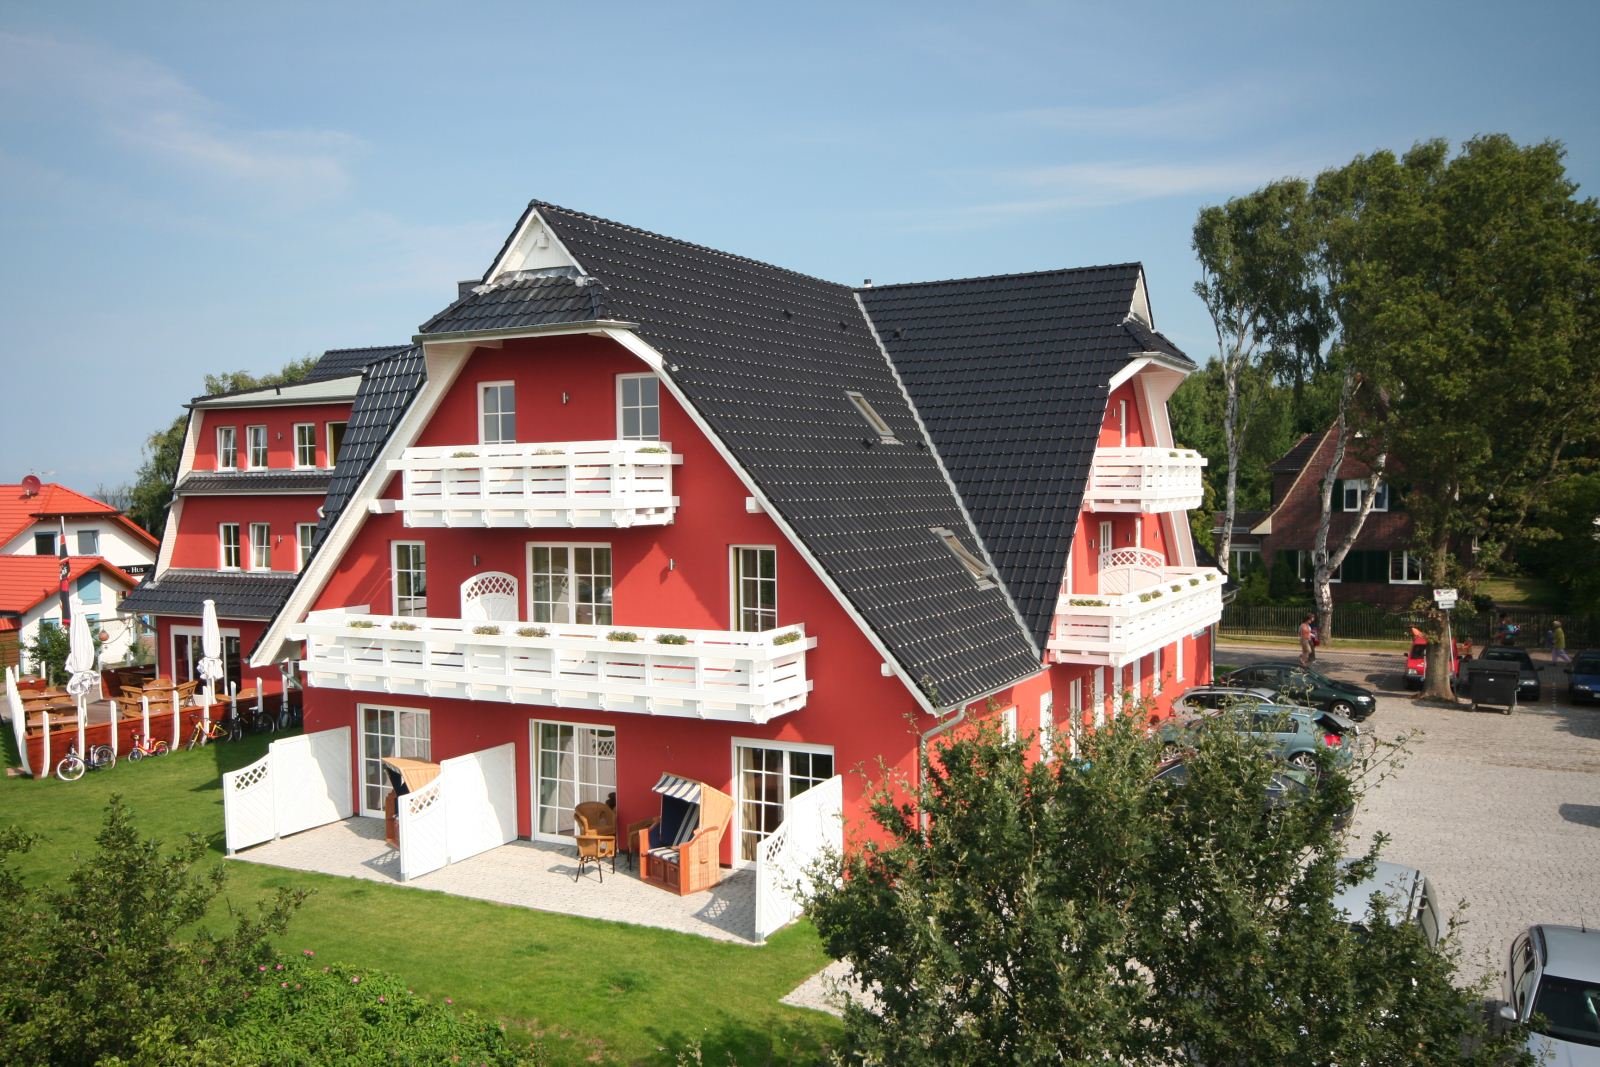 Ostsee-Romantik pur – 2 romantisch schöne Tage Strandhotel Deichgraf (4 Sterne) in Ostseeheilbad Graal Müritz, Mecklenburg-Vorpommern inkl. Halbpension